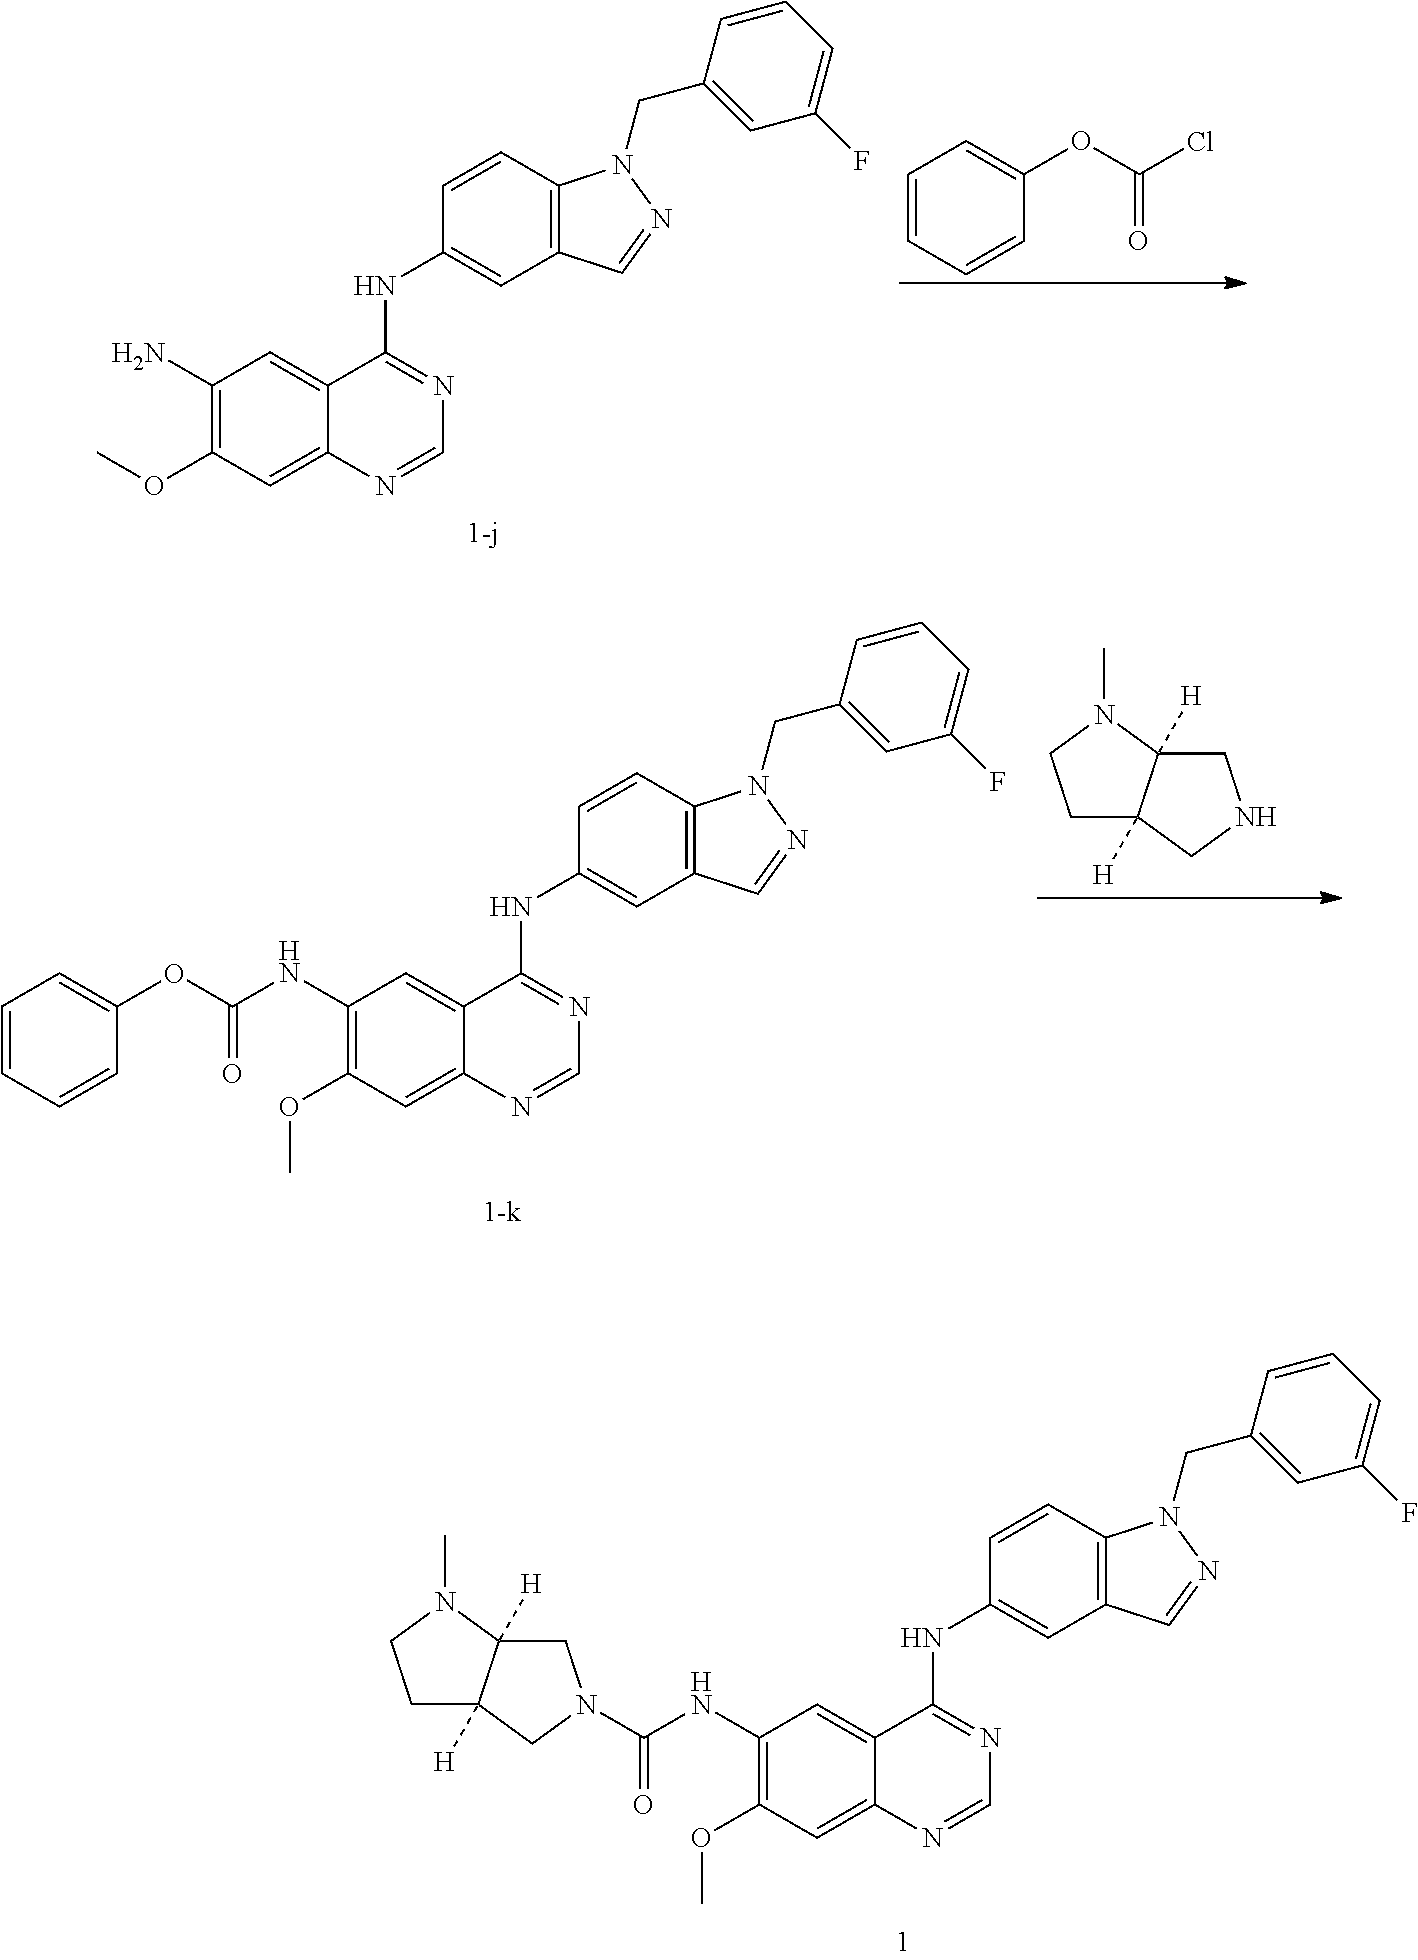 Quinazoline compounds